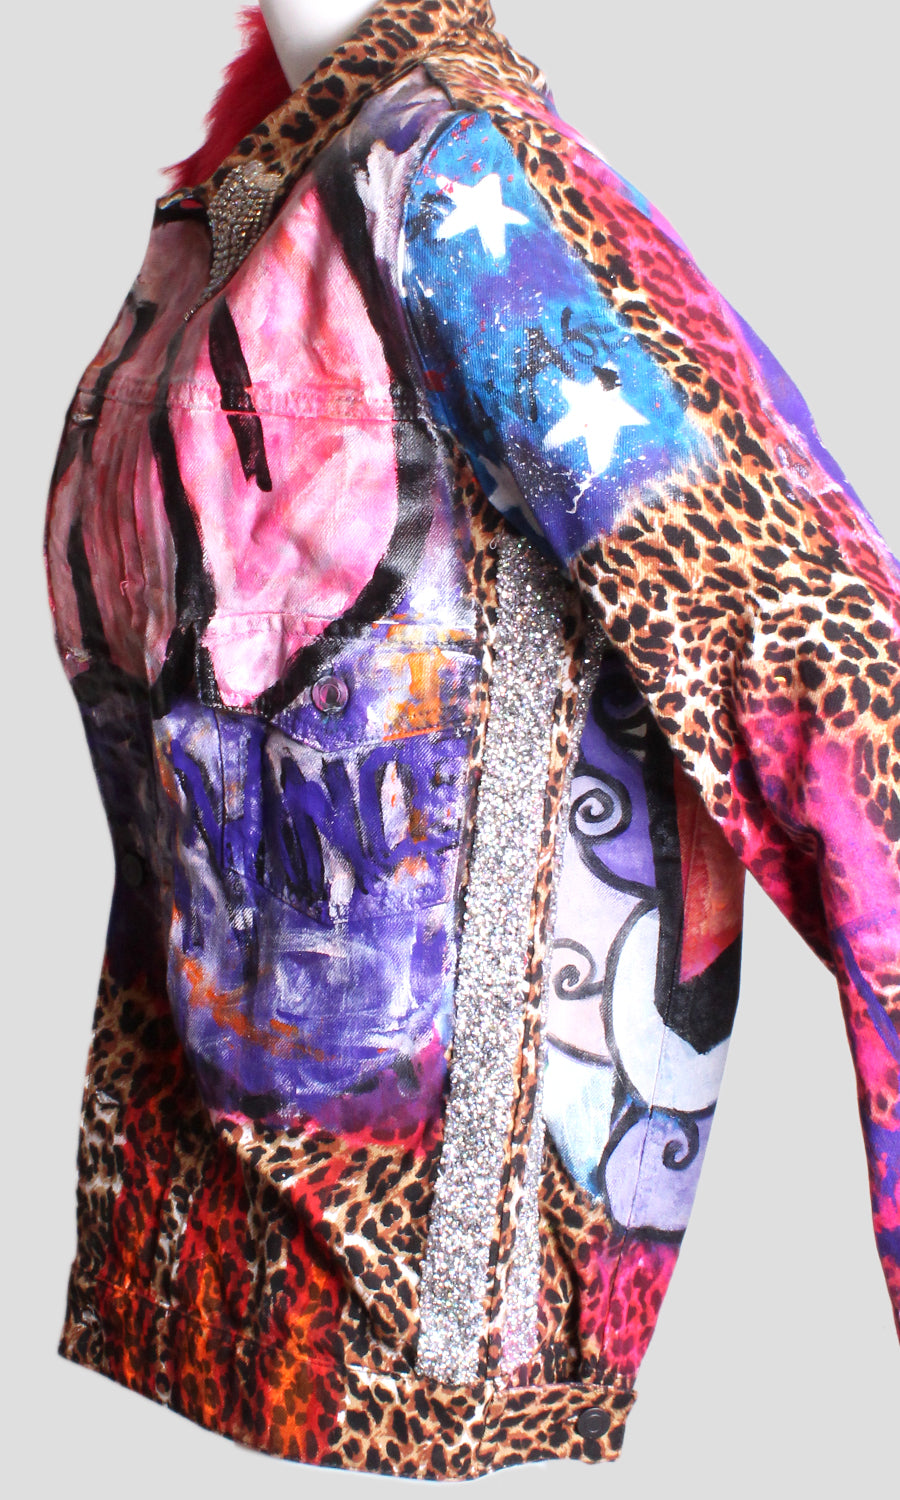 Fancy Fur Leopard Jacket – Patricia Field ARTFASHION